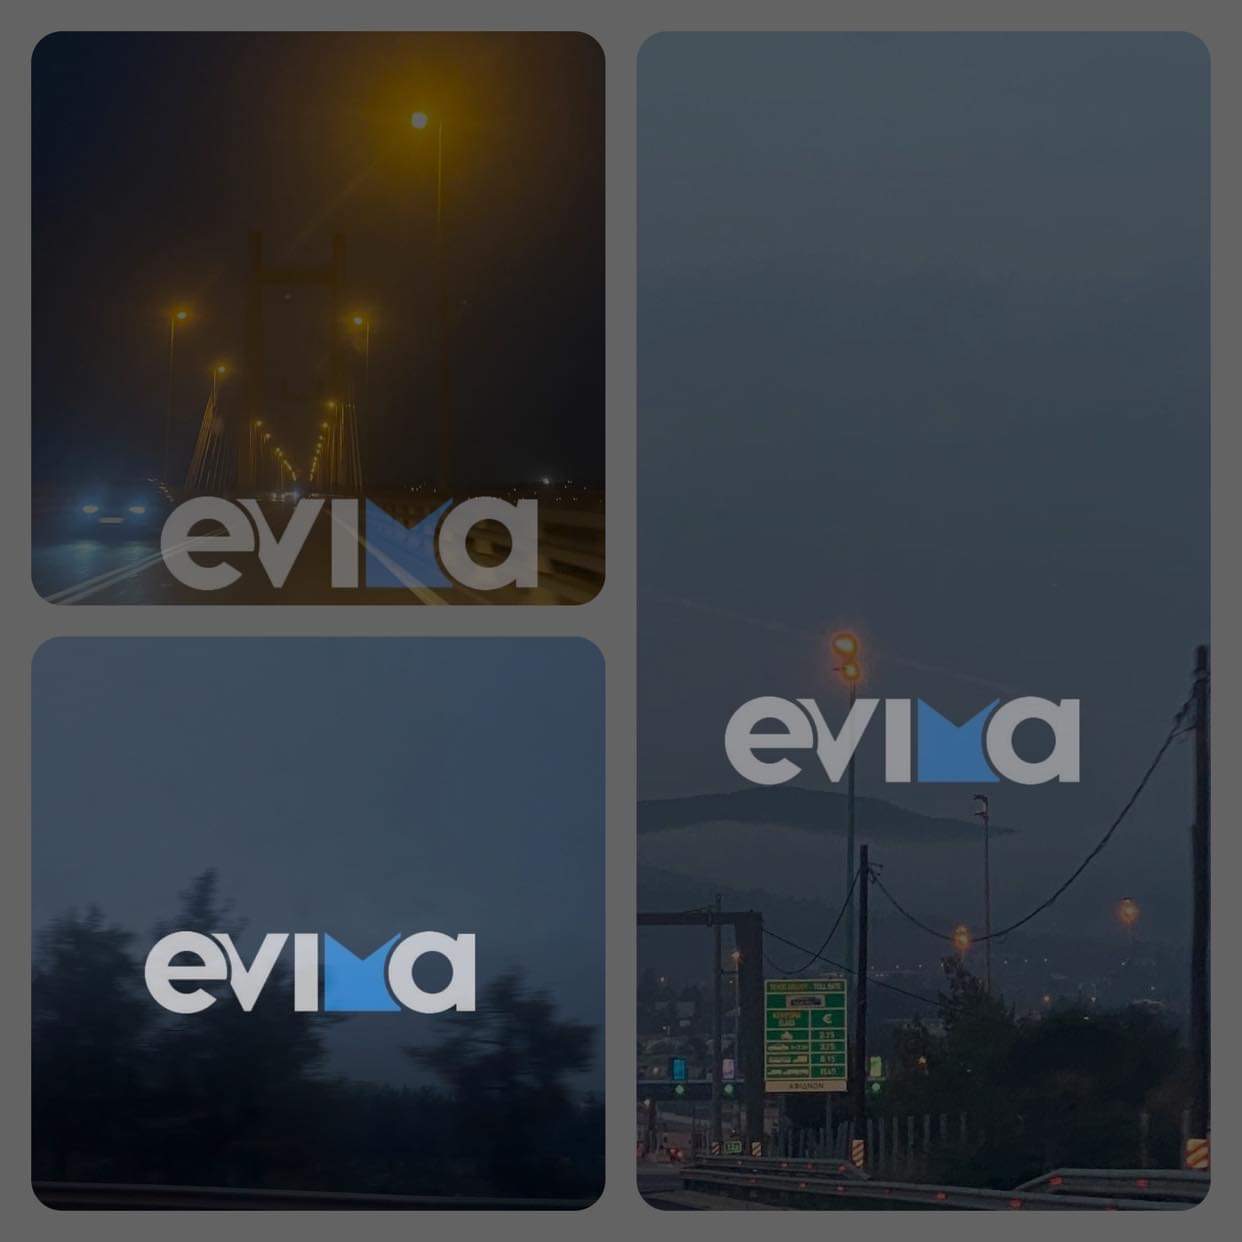 Πυκνή ομίχλη στην Εθνική οδό Αθηνών Λαμίας έως και την Εύβοια – «Γίναμε Αγγλία» λένε οι οδηγοί στο evima.gr